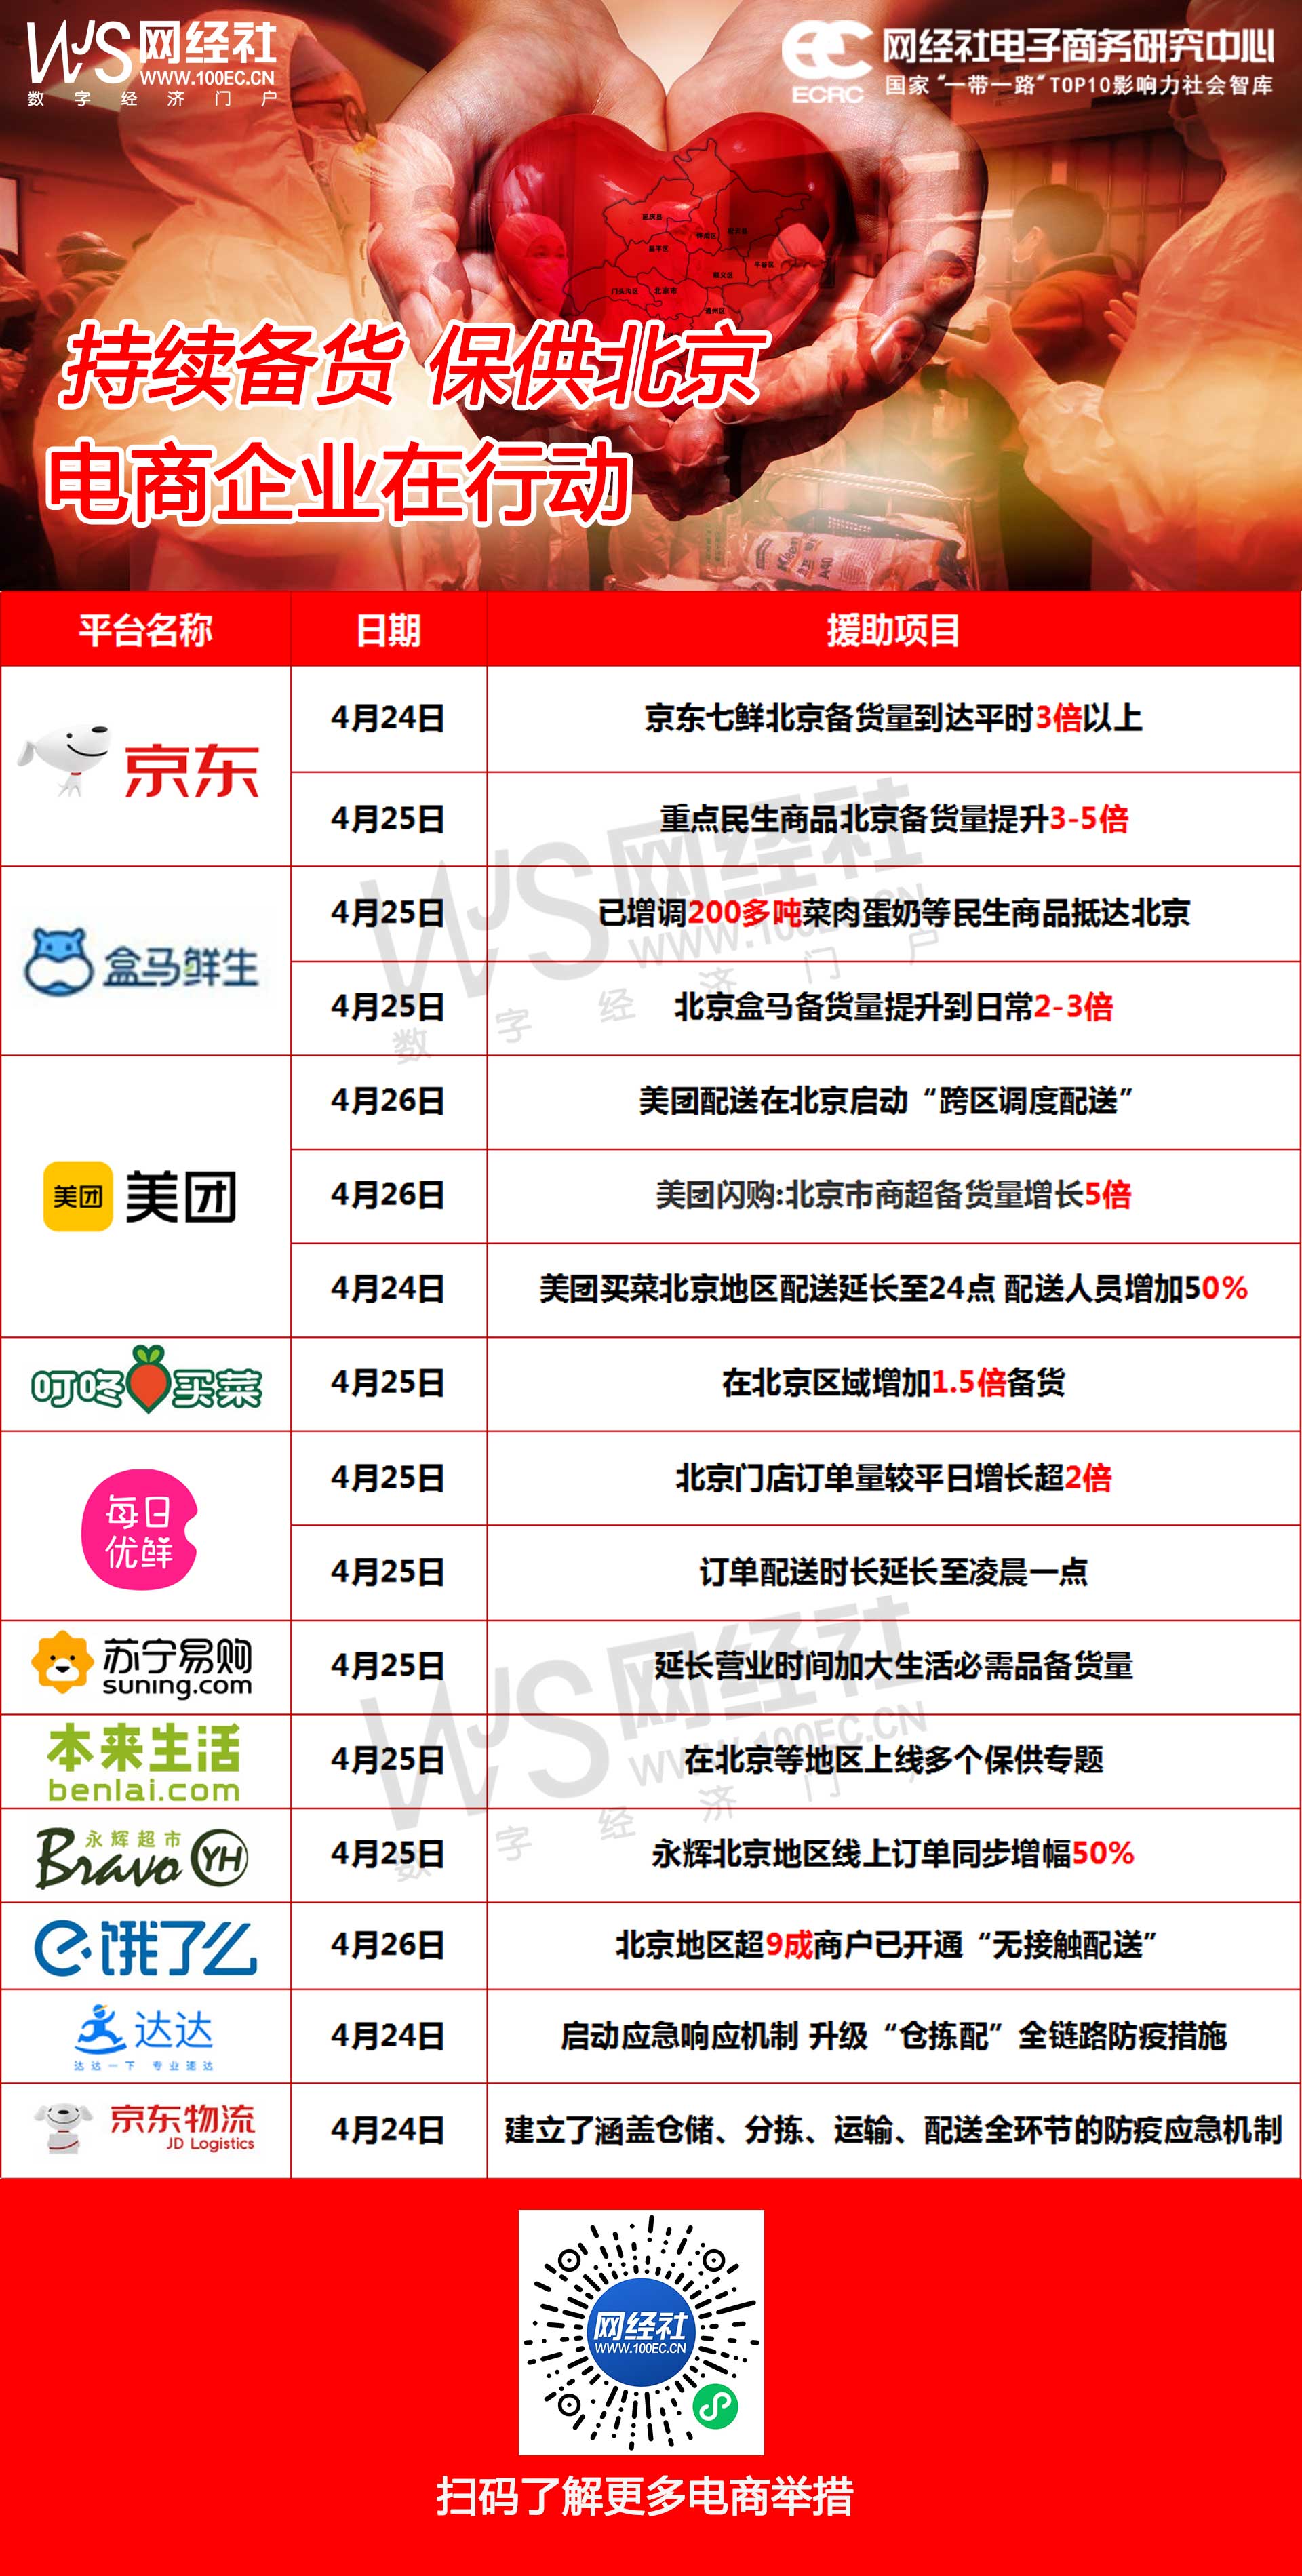 持续备货-保供北京-电商企业在行动.jpg